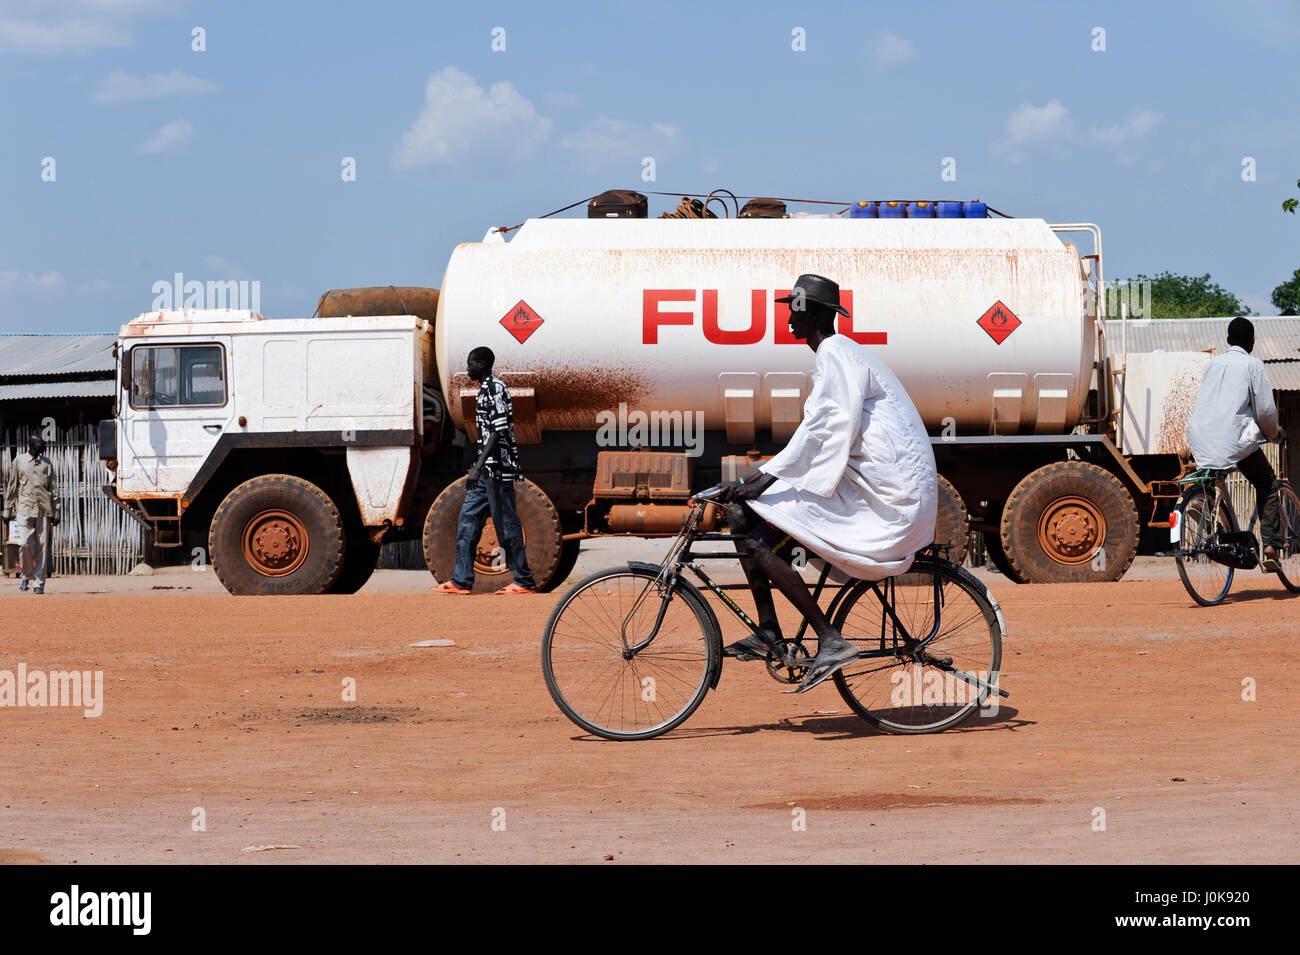 Sudán Sur de la región de Bahr el-Ghazal, Estado de Lagos, la ciudad cuibet, camión cisterna de combustible / demandó-Sudán región de Bahr el-Ghazal, Estado de Lagos, Cuibet, Treibstoff Tankwagen Benzin, die Preise sind durch inflación und ein embargo des Nordsudan astronomisch hoch Foto de stock